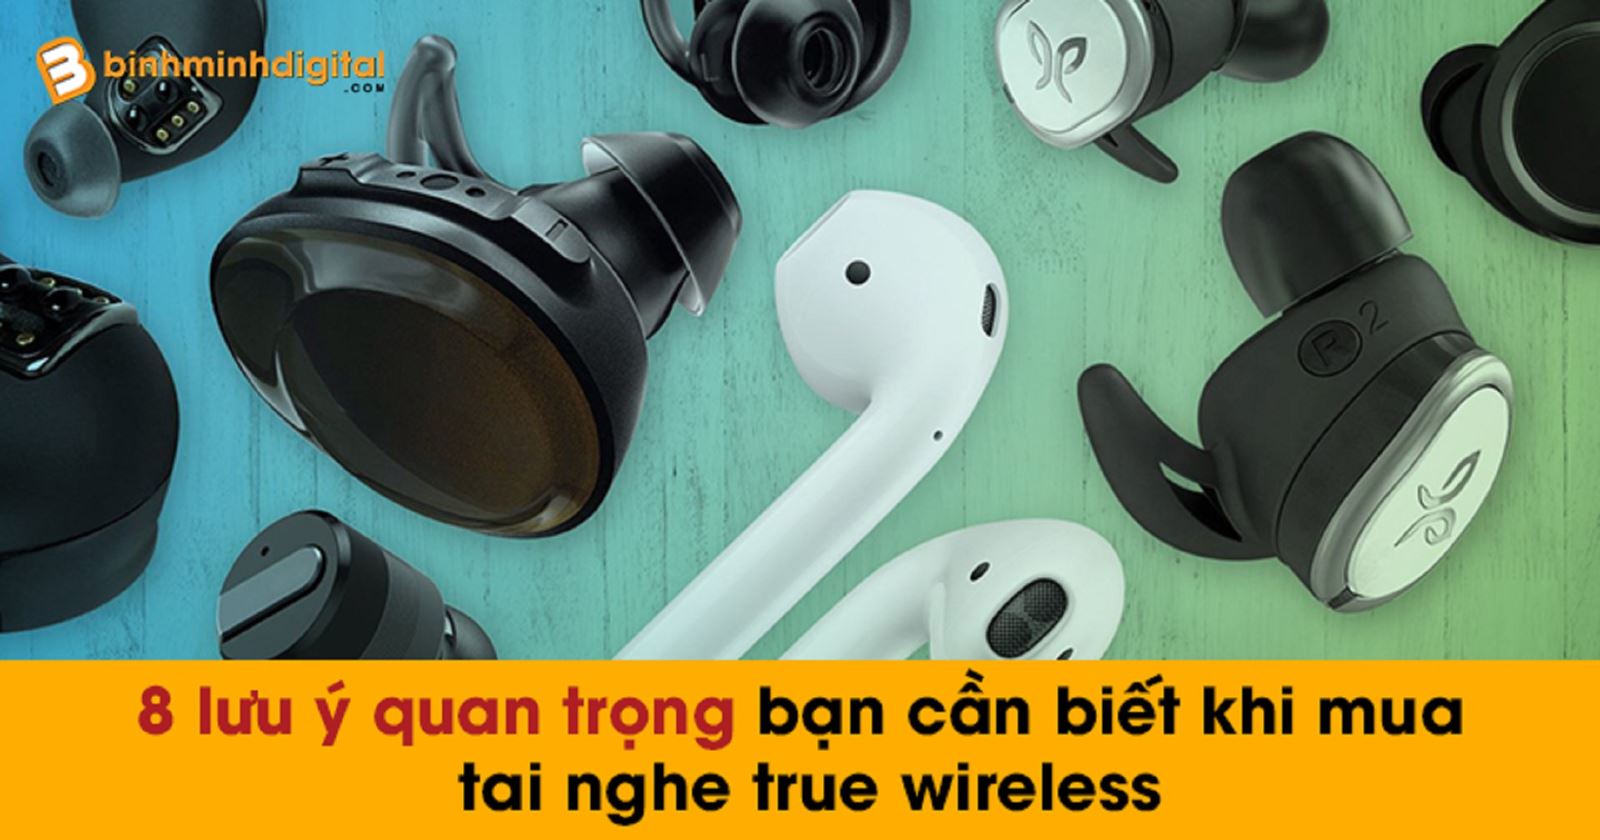 8 lưu ý quan trọng bạn cần biết khi mua tai nghe true wireless